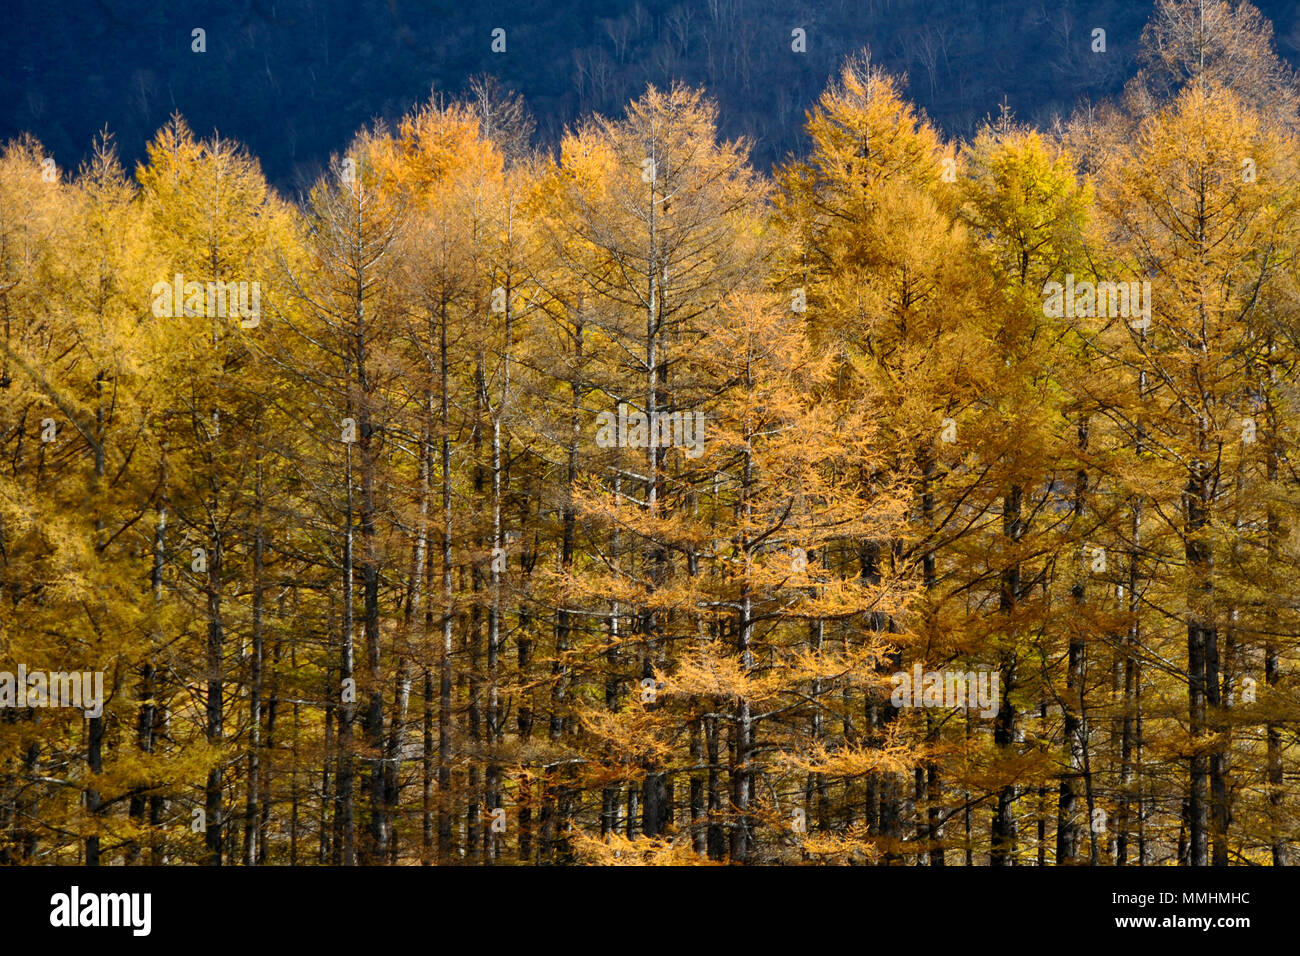 Le feuillage des arbres déciduale près du Lac Chuzenji, Nikko, Japon Banque D'Images